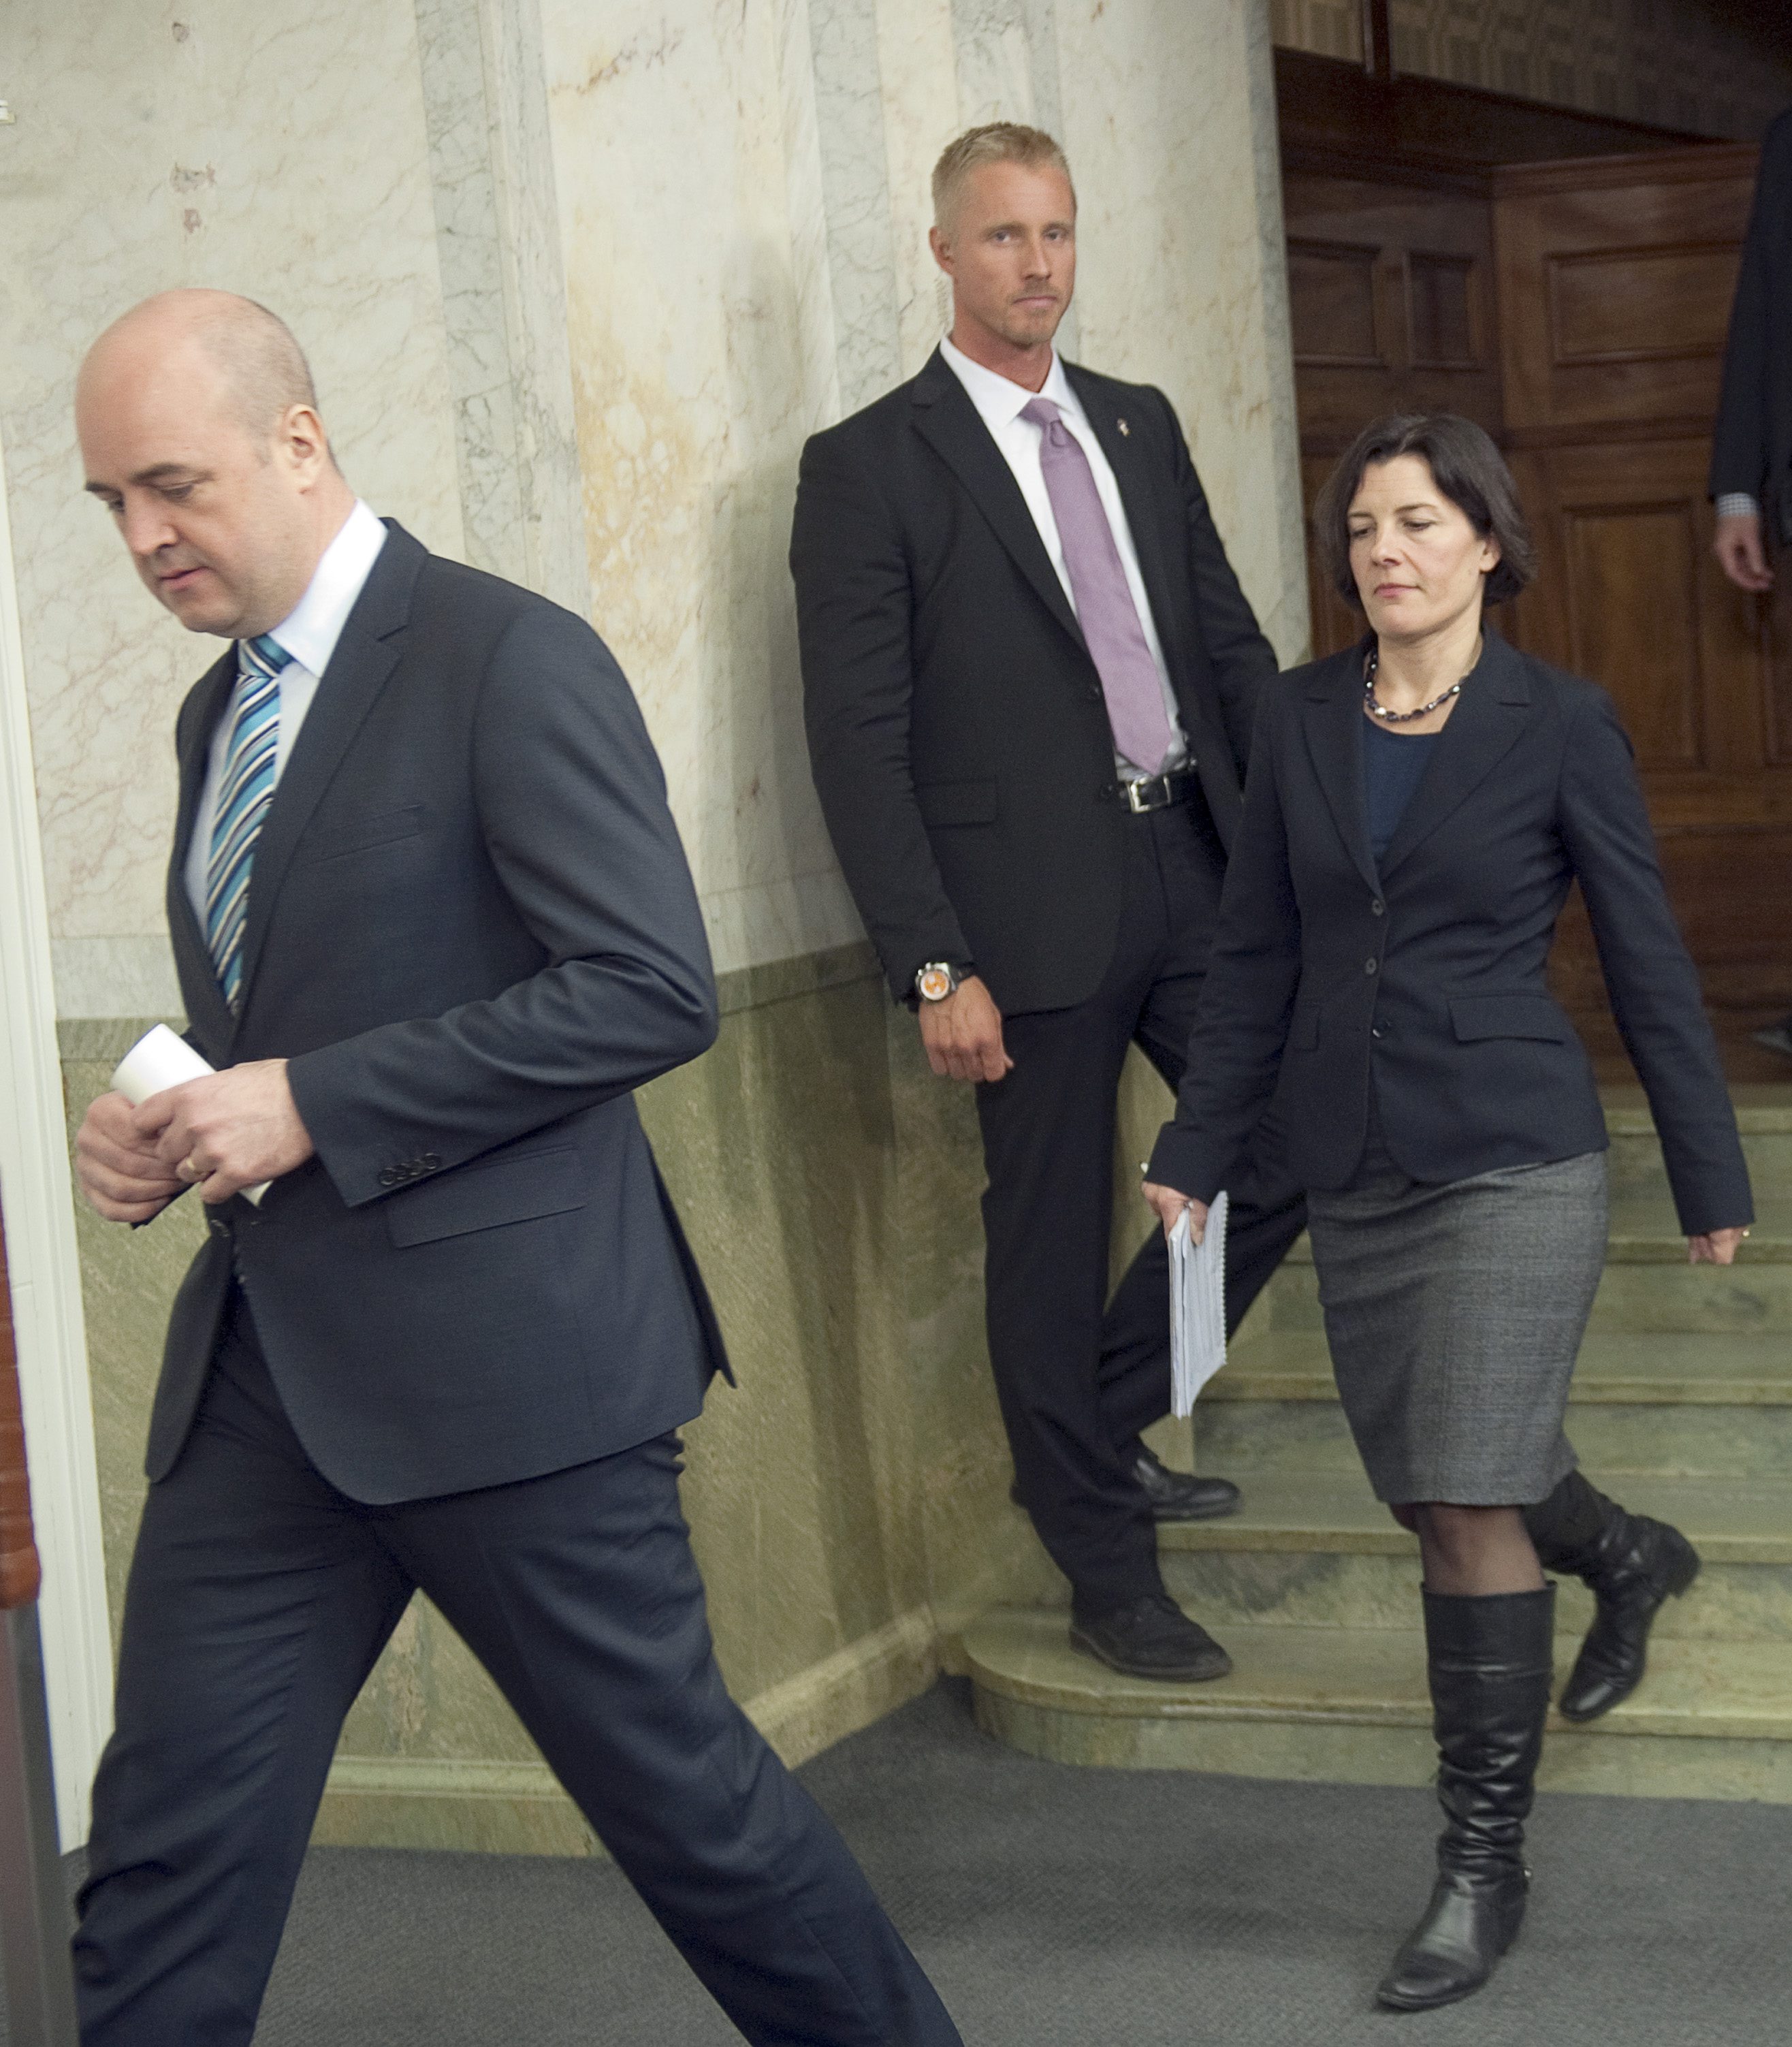 "Jag är mycket glad till att Karin Enström tackat ja till att bli försvarsminister" sa Reinfeldt.